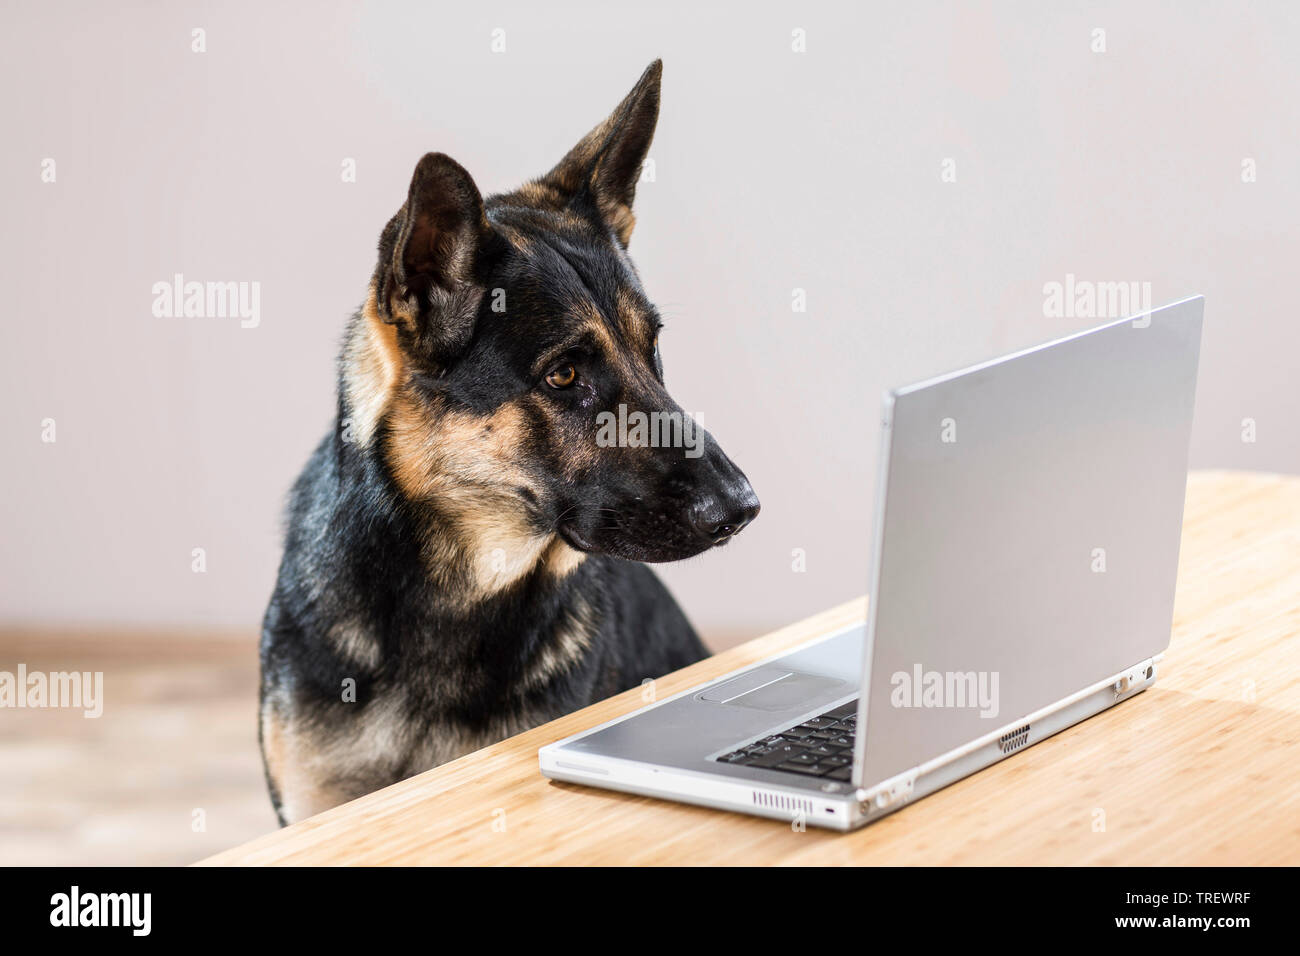 German Shepherd, Alsatian. Adult looking at computer. Germany Stock Photo